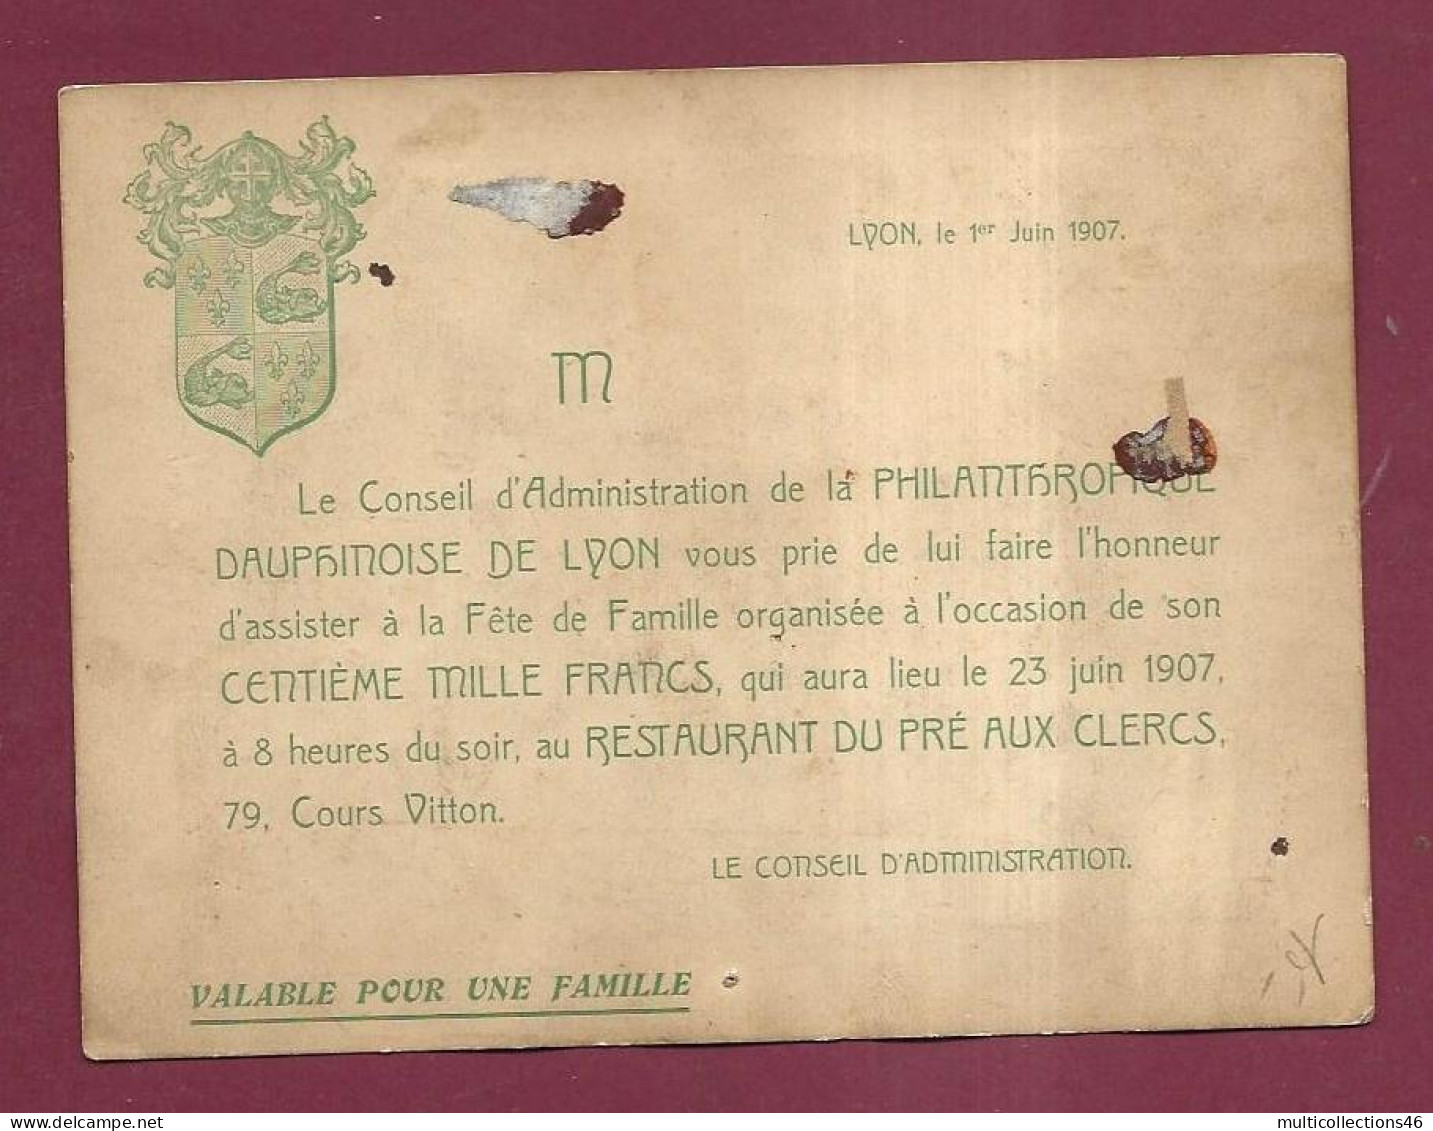 020923 - INVITATION Photo 1907 LYON Philanthropique Dauphinoise Lyon Restauration Monument Historique - Personnages Asie - Lyon 6